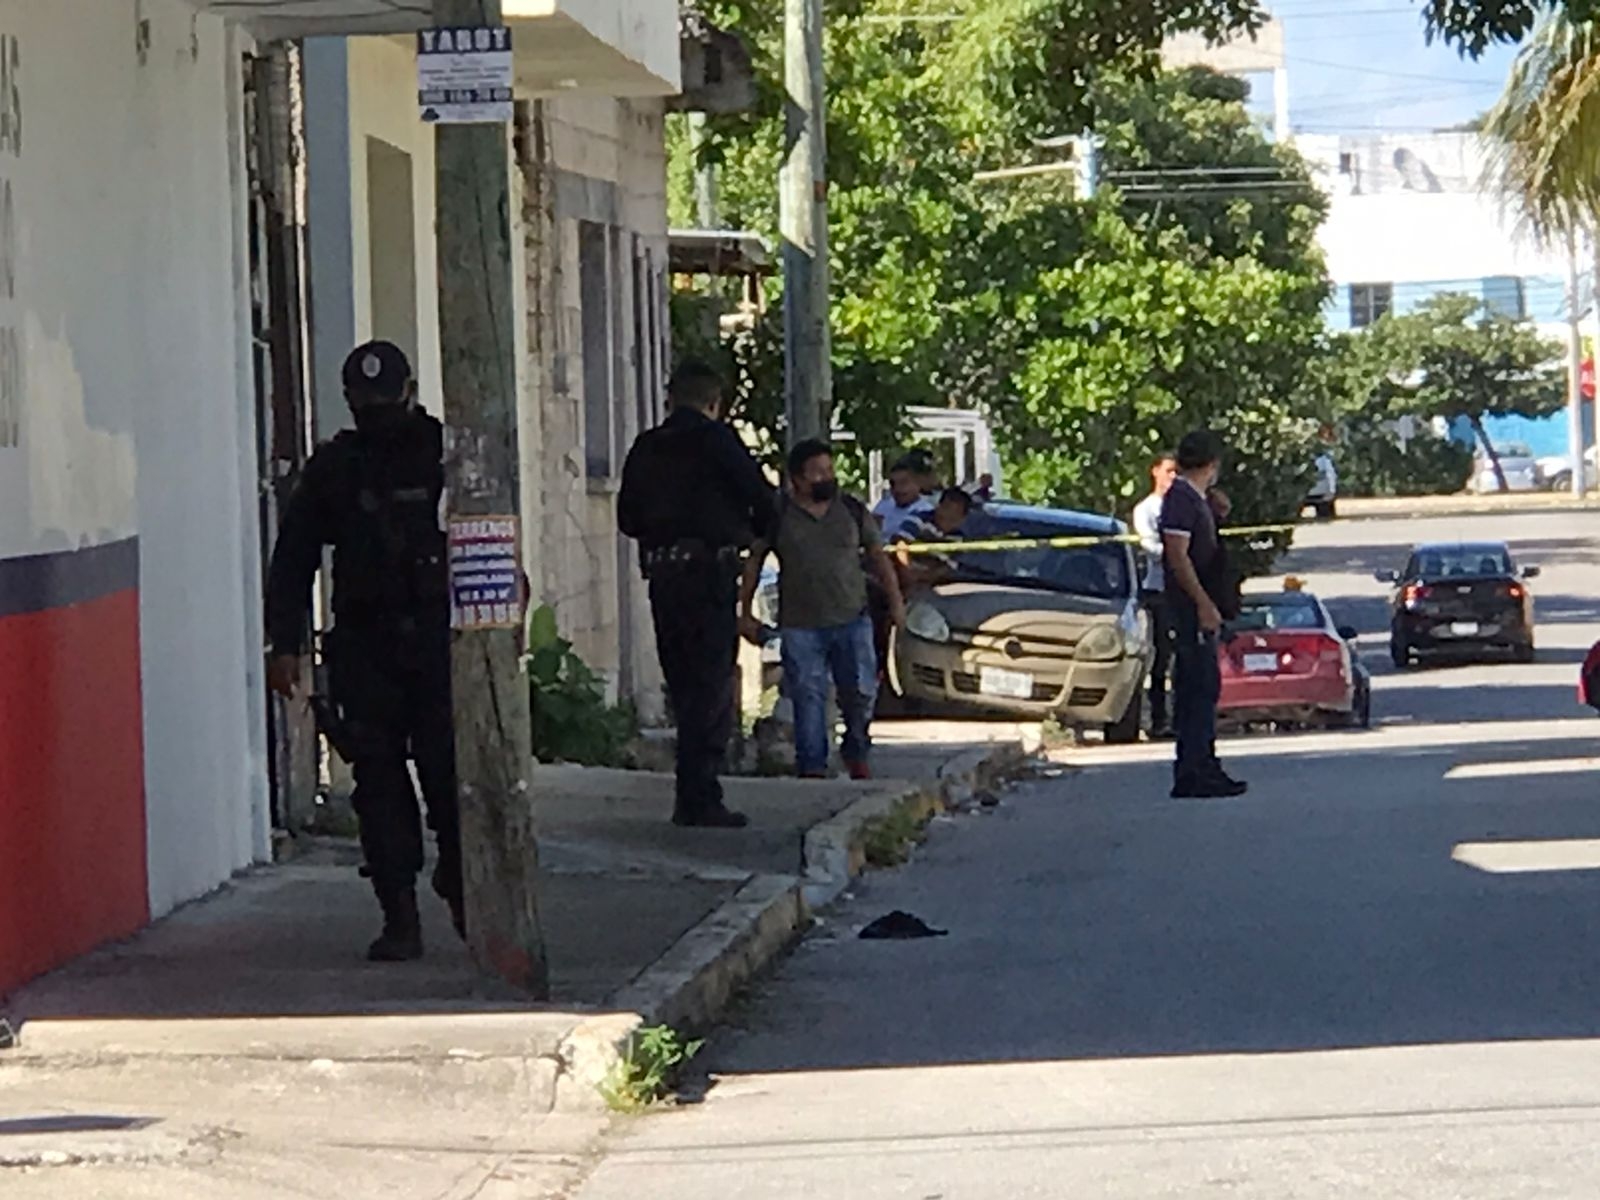 Al lugar llegaron elementos de la Policía Quintana Roo, quienes tomaron conocimiento de lo ocurrido